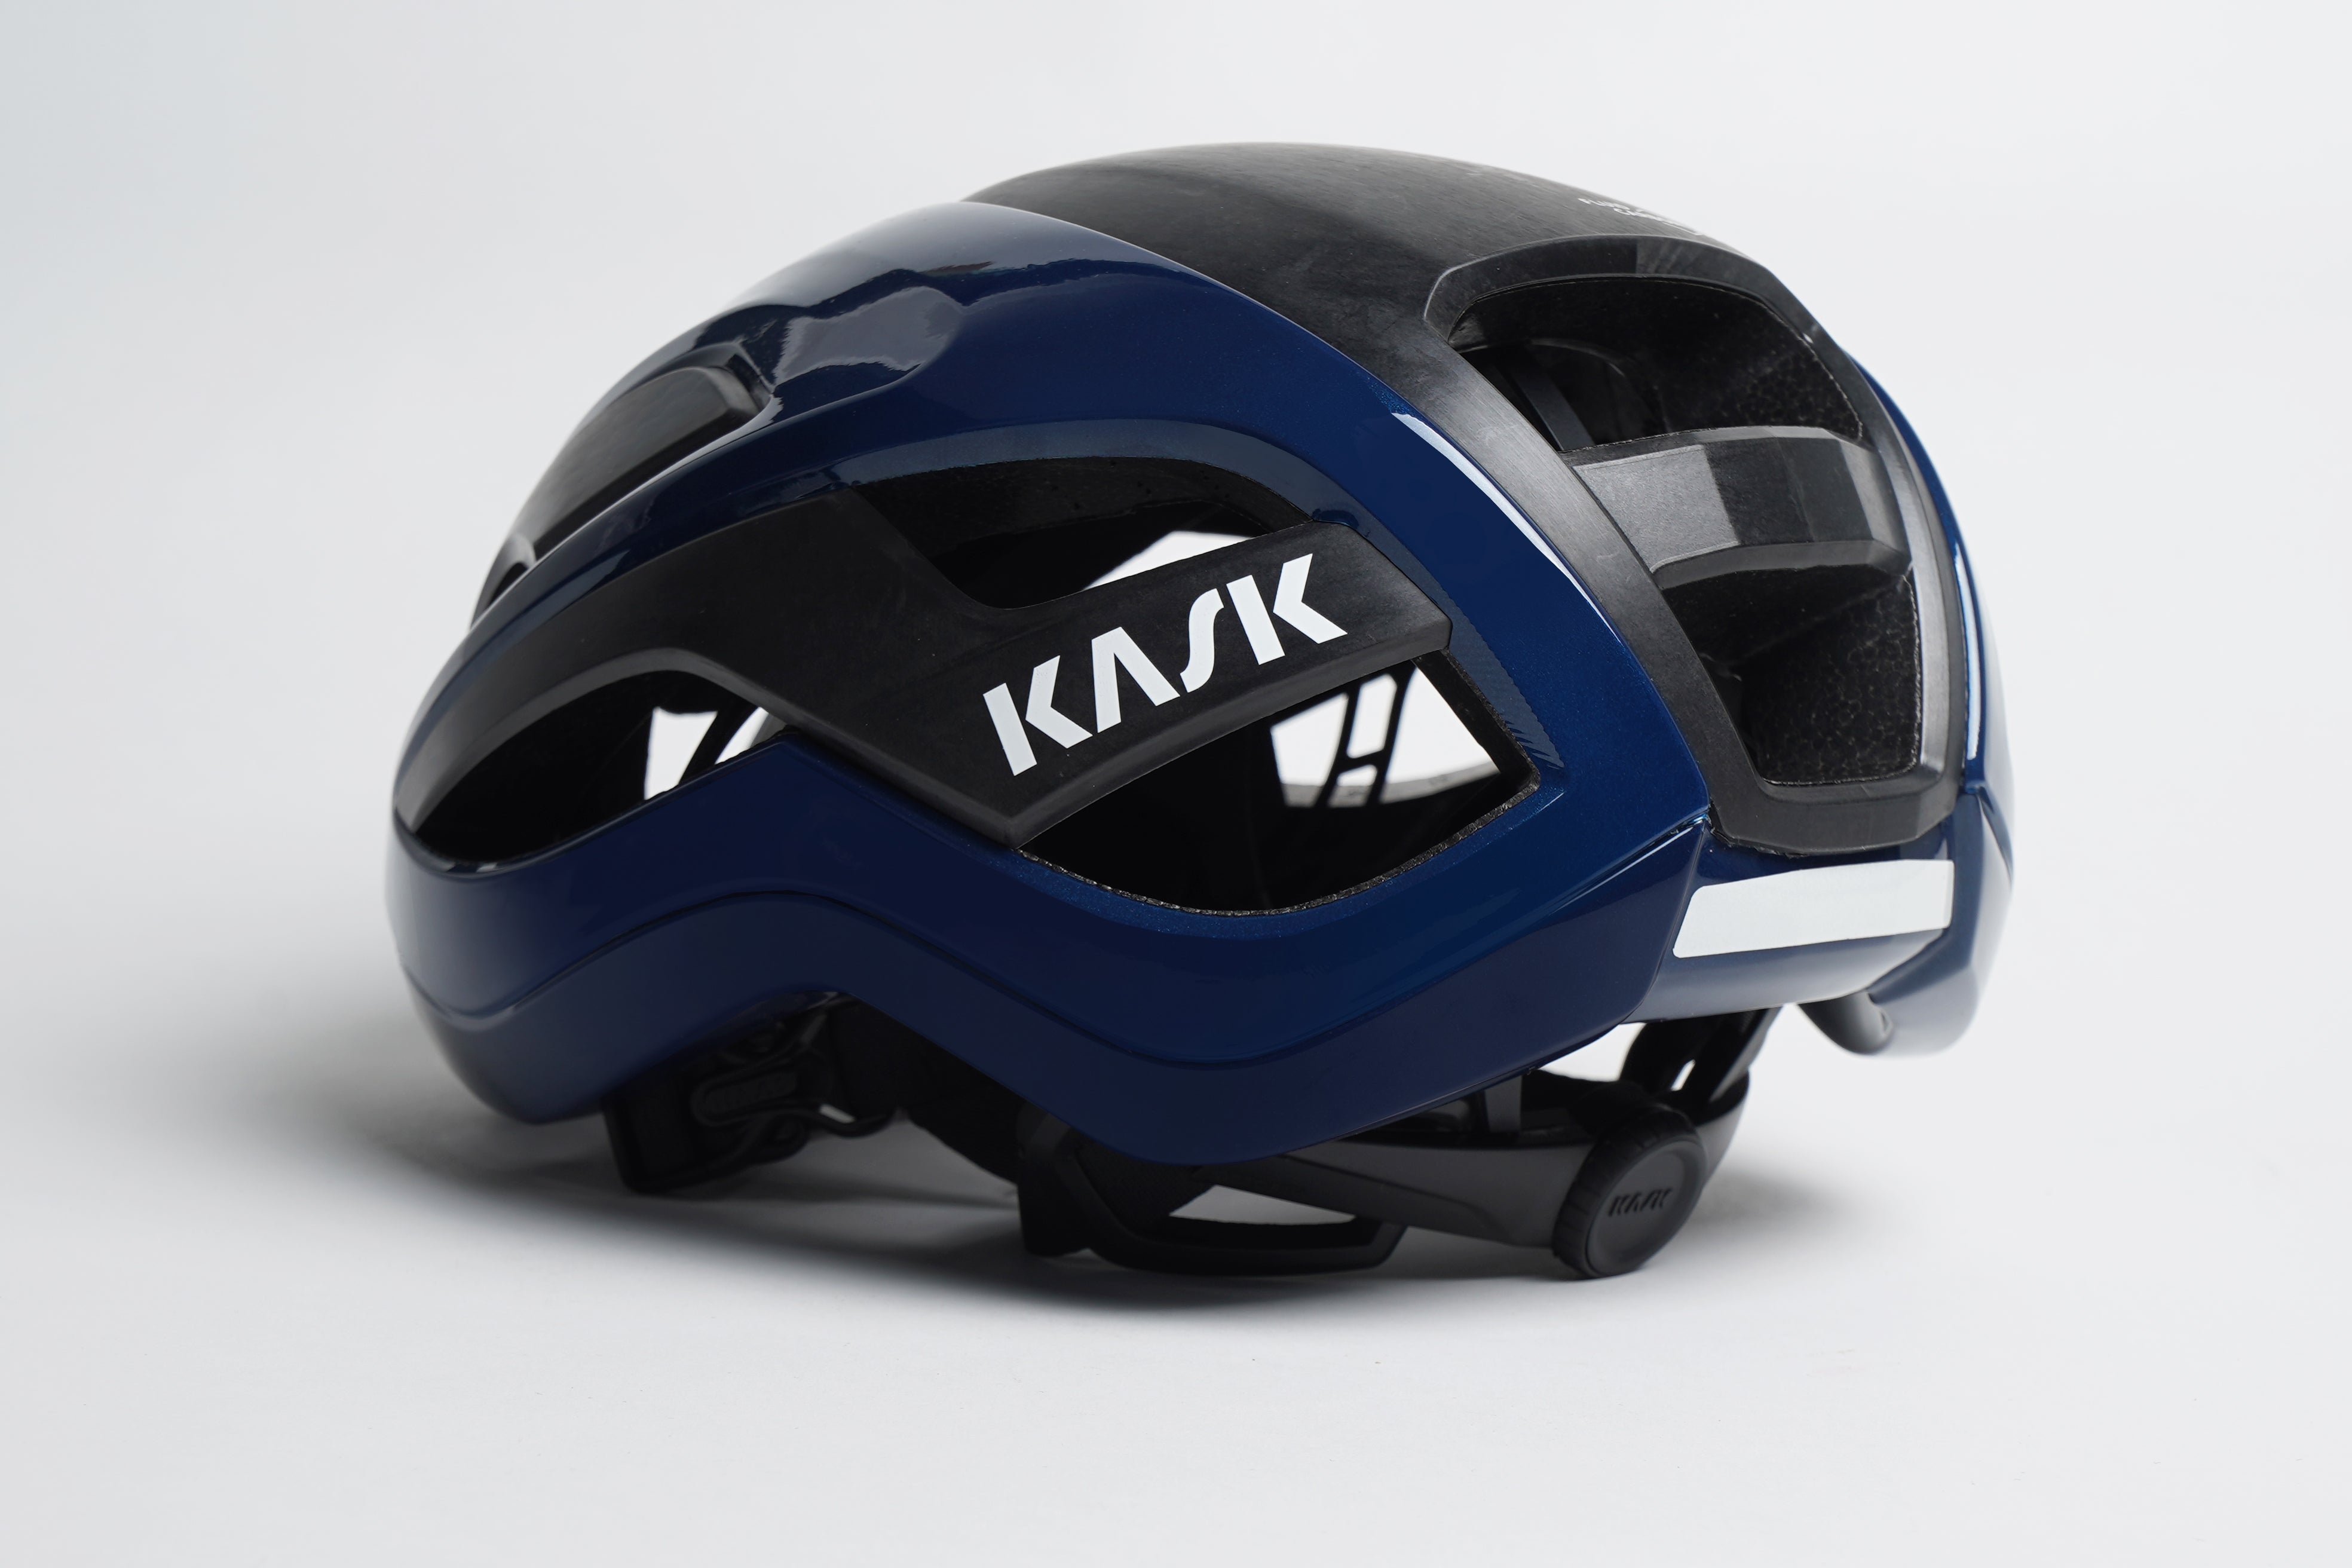 Kask ELEMENTO Helmet- Bike Helmets- Kask Helmets